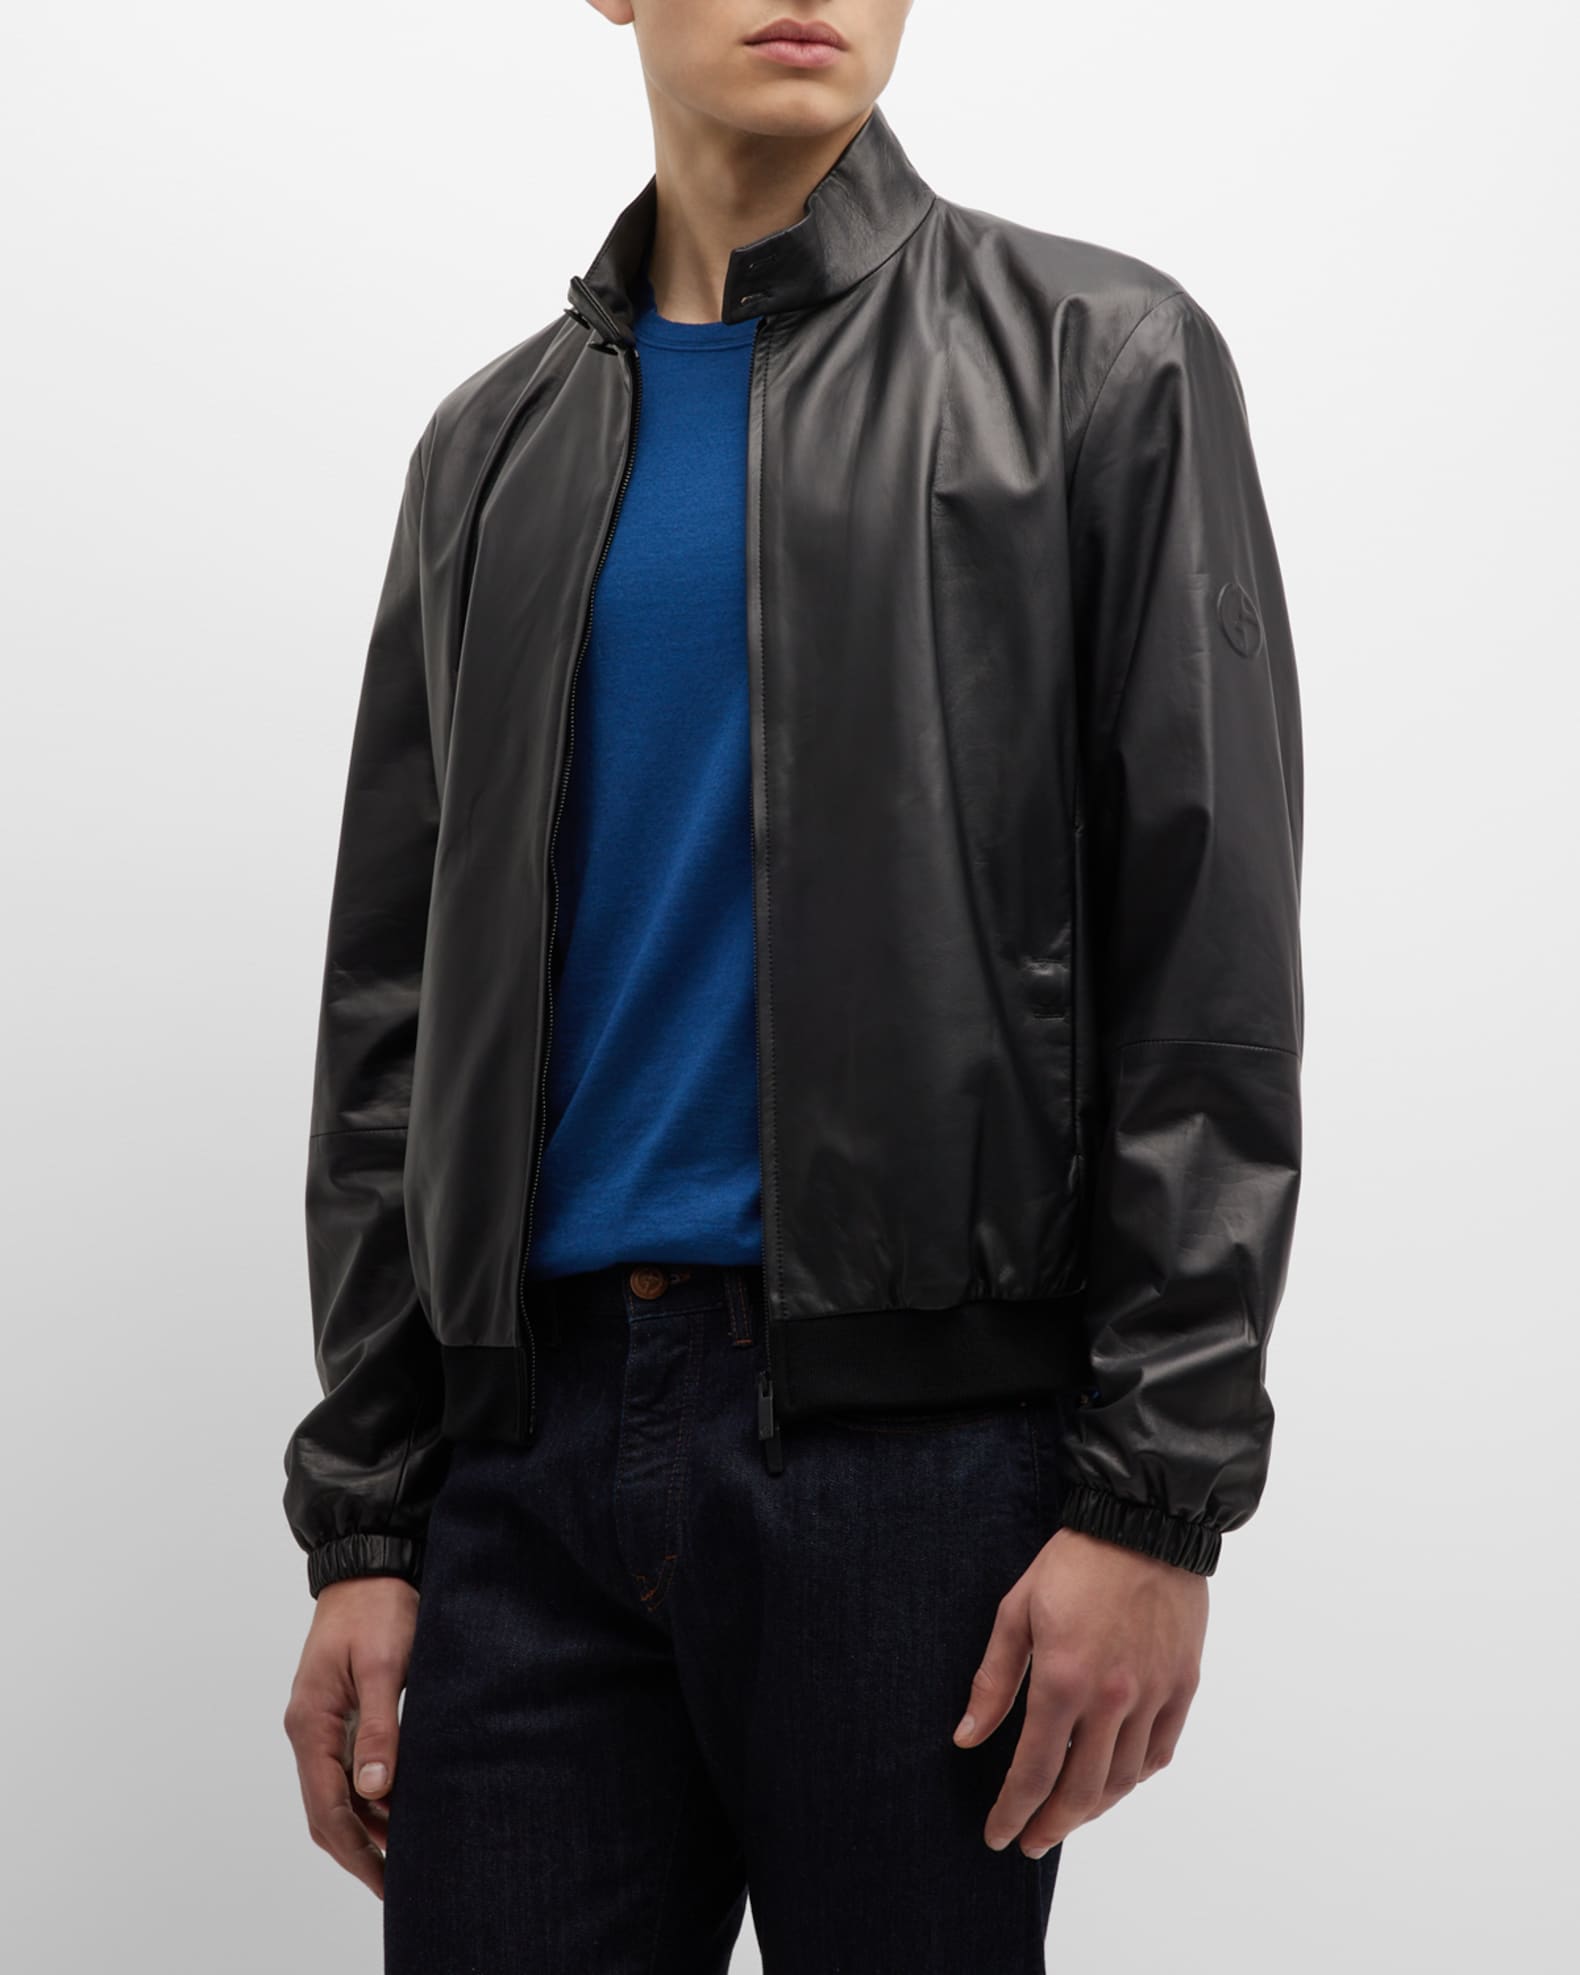 Componeren Cadeau Bemiddelen Giorgio Armani Men's Lambskin Leather Jacket | Neiman Marcus